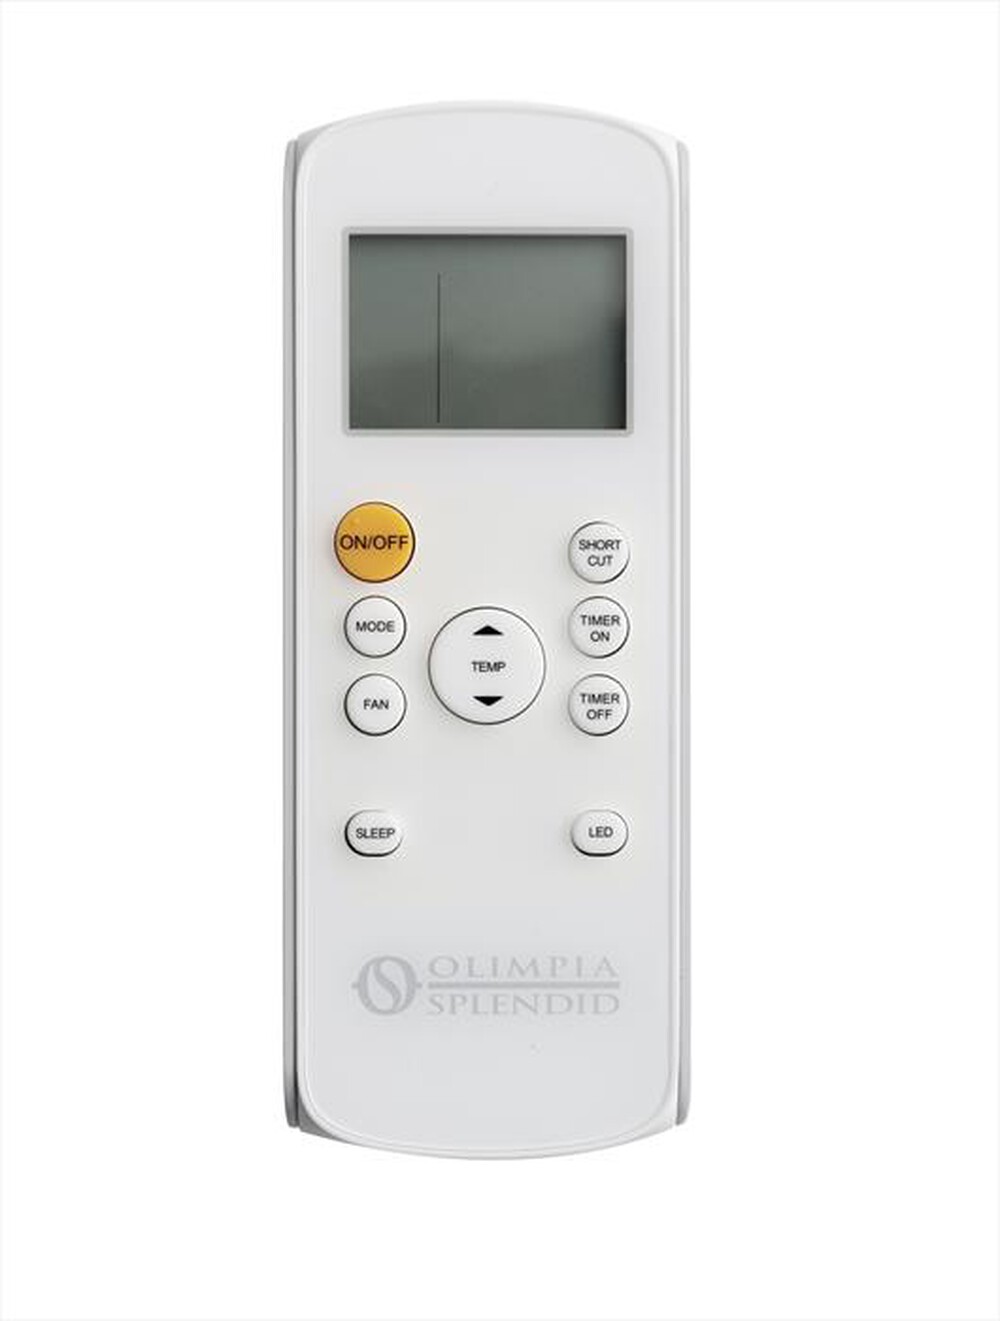 "OLIMPIA SPLENDID - DOLCECLIMA COMPACT 10 P Condizionatore portatile-Bianco"